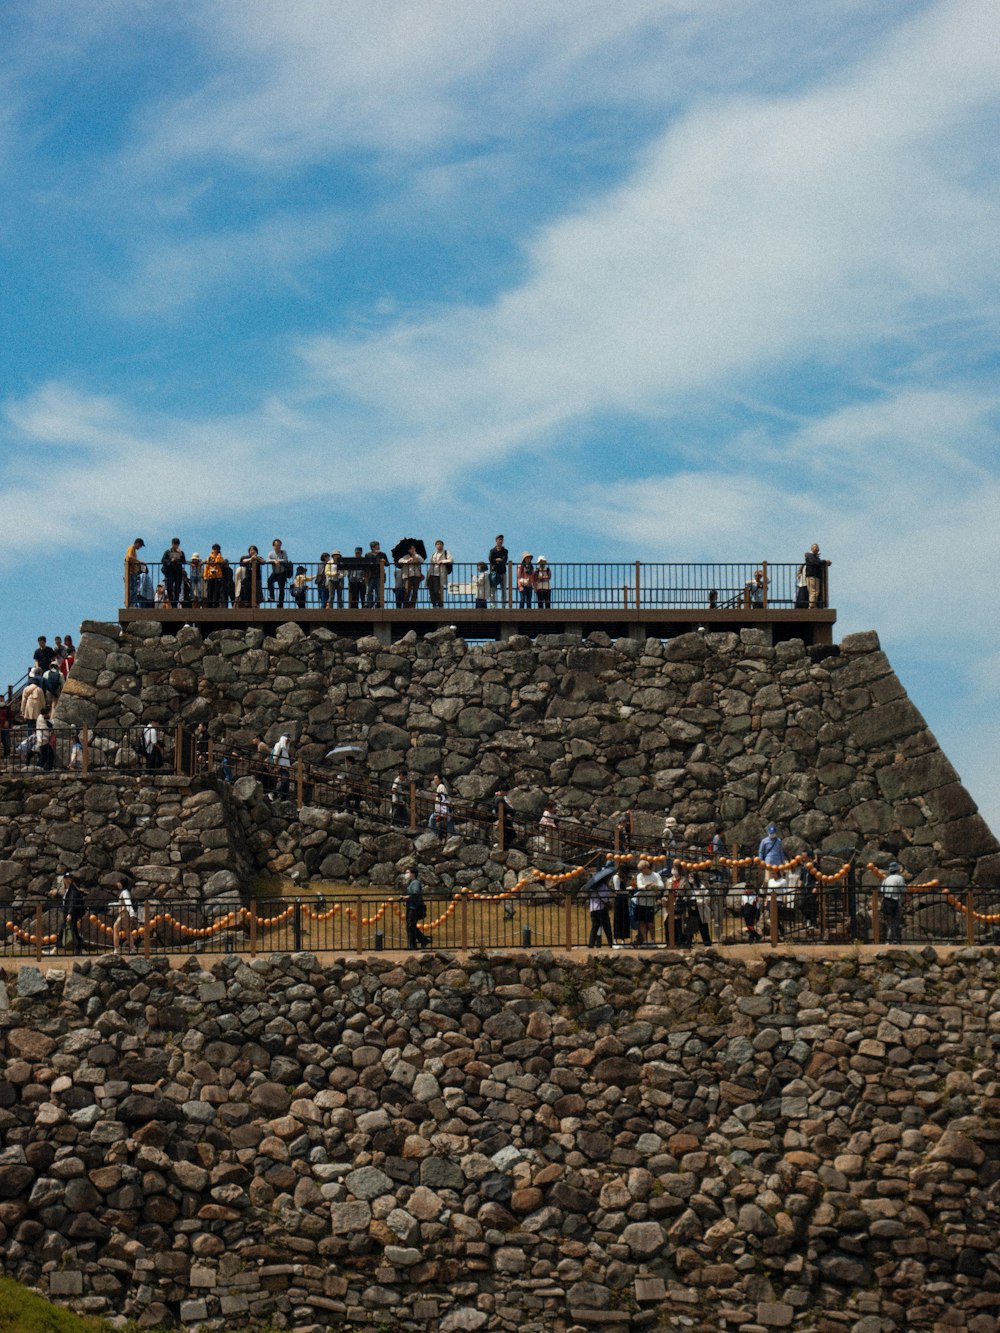 Eine Gruppe von Menschen, die auf einer Steinmauer stehen